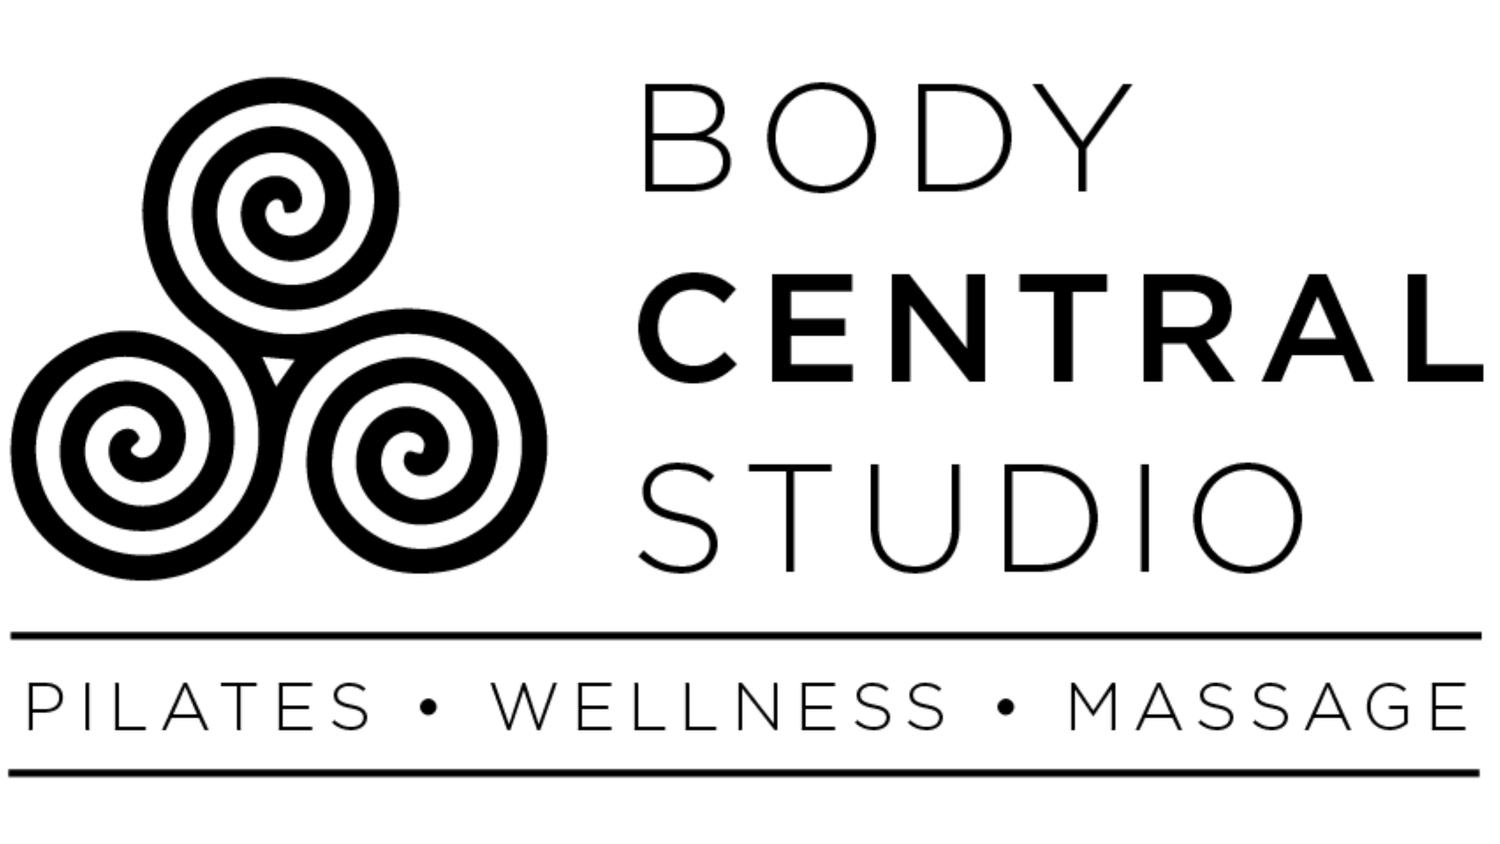 Body Central Studio